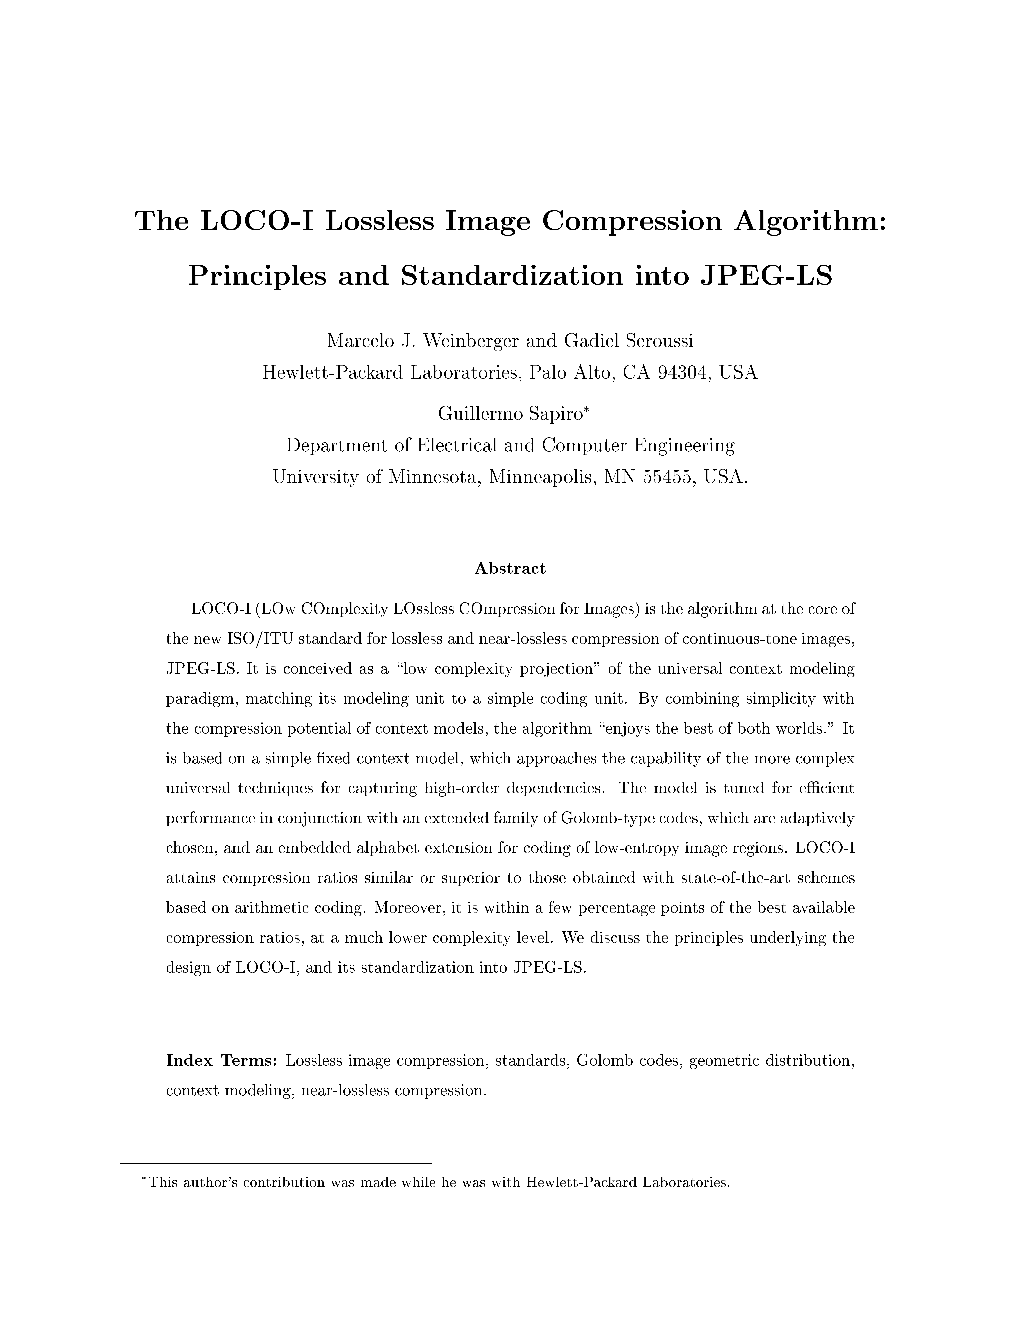 The LOCO-I Lossless Image Compression Algorithm: Principles